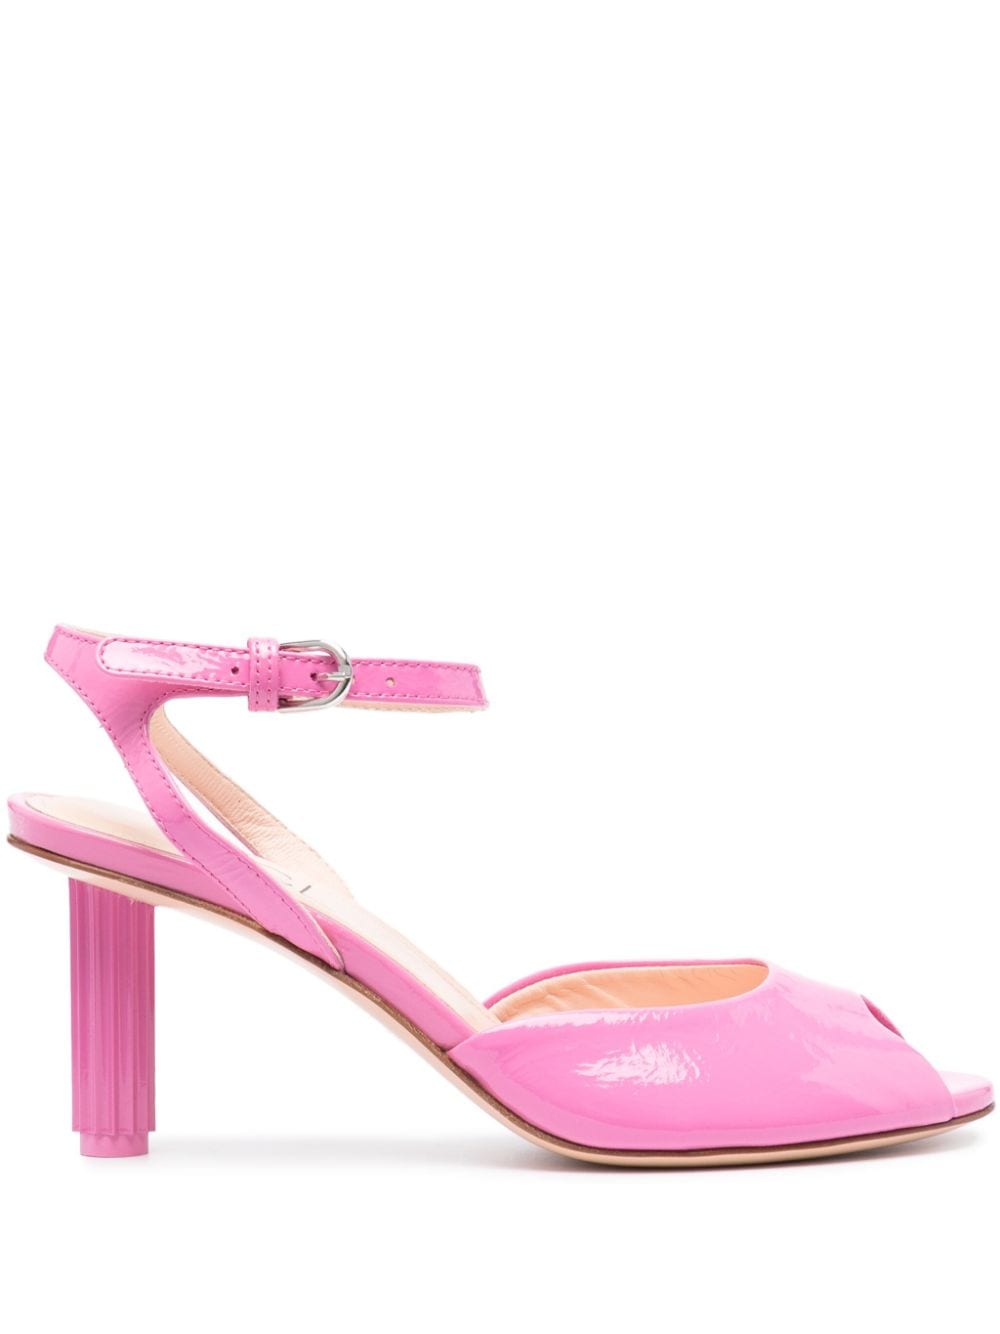 AGL Dorica 65mm leather sandals - Pink von AGL